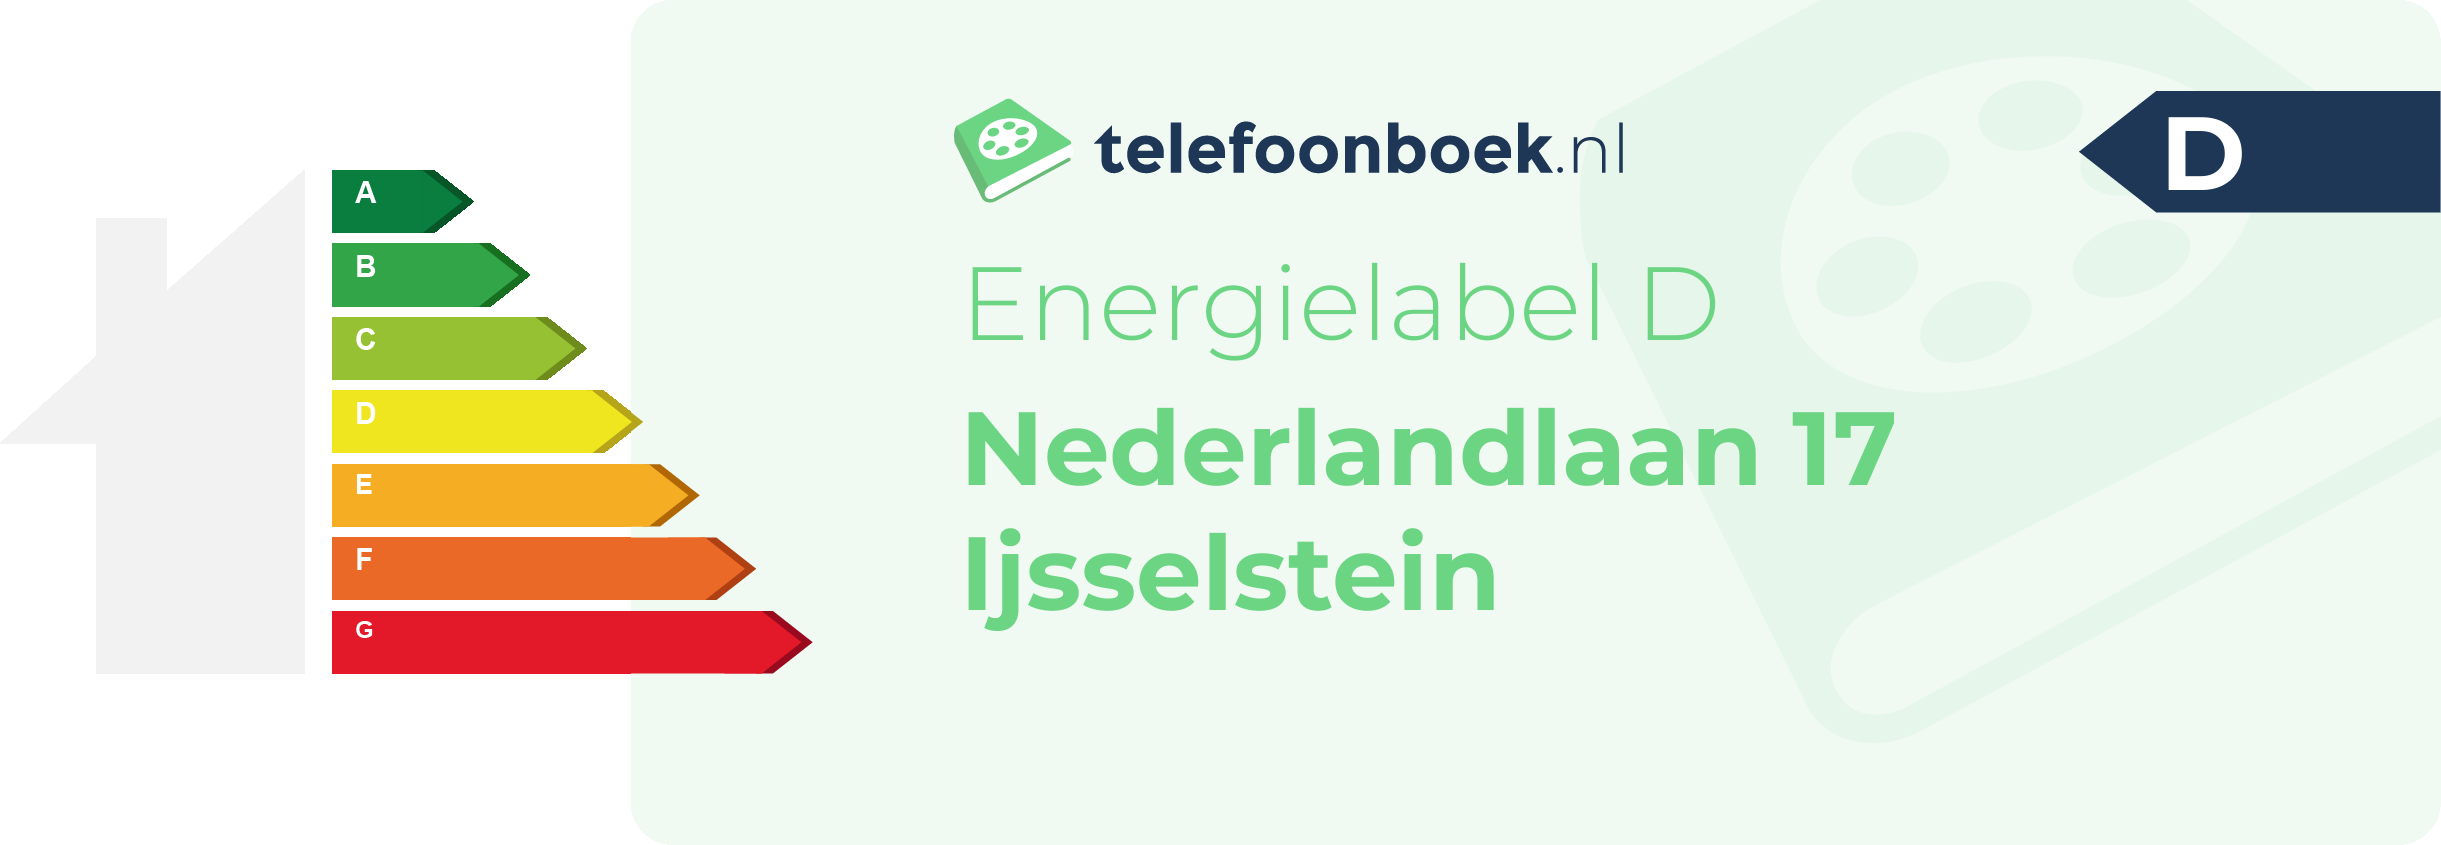 Energielabel Nederlandlaan 17 Ijsselstein